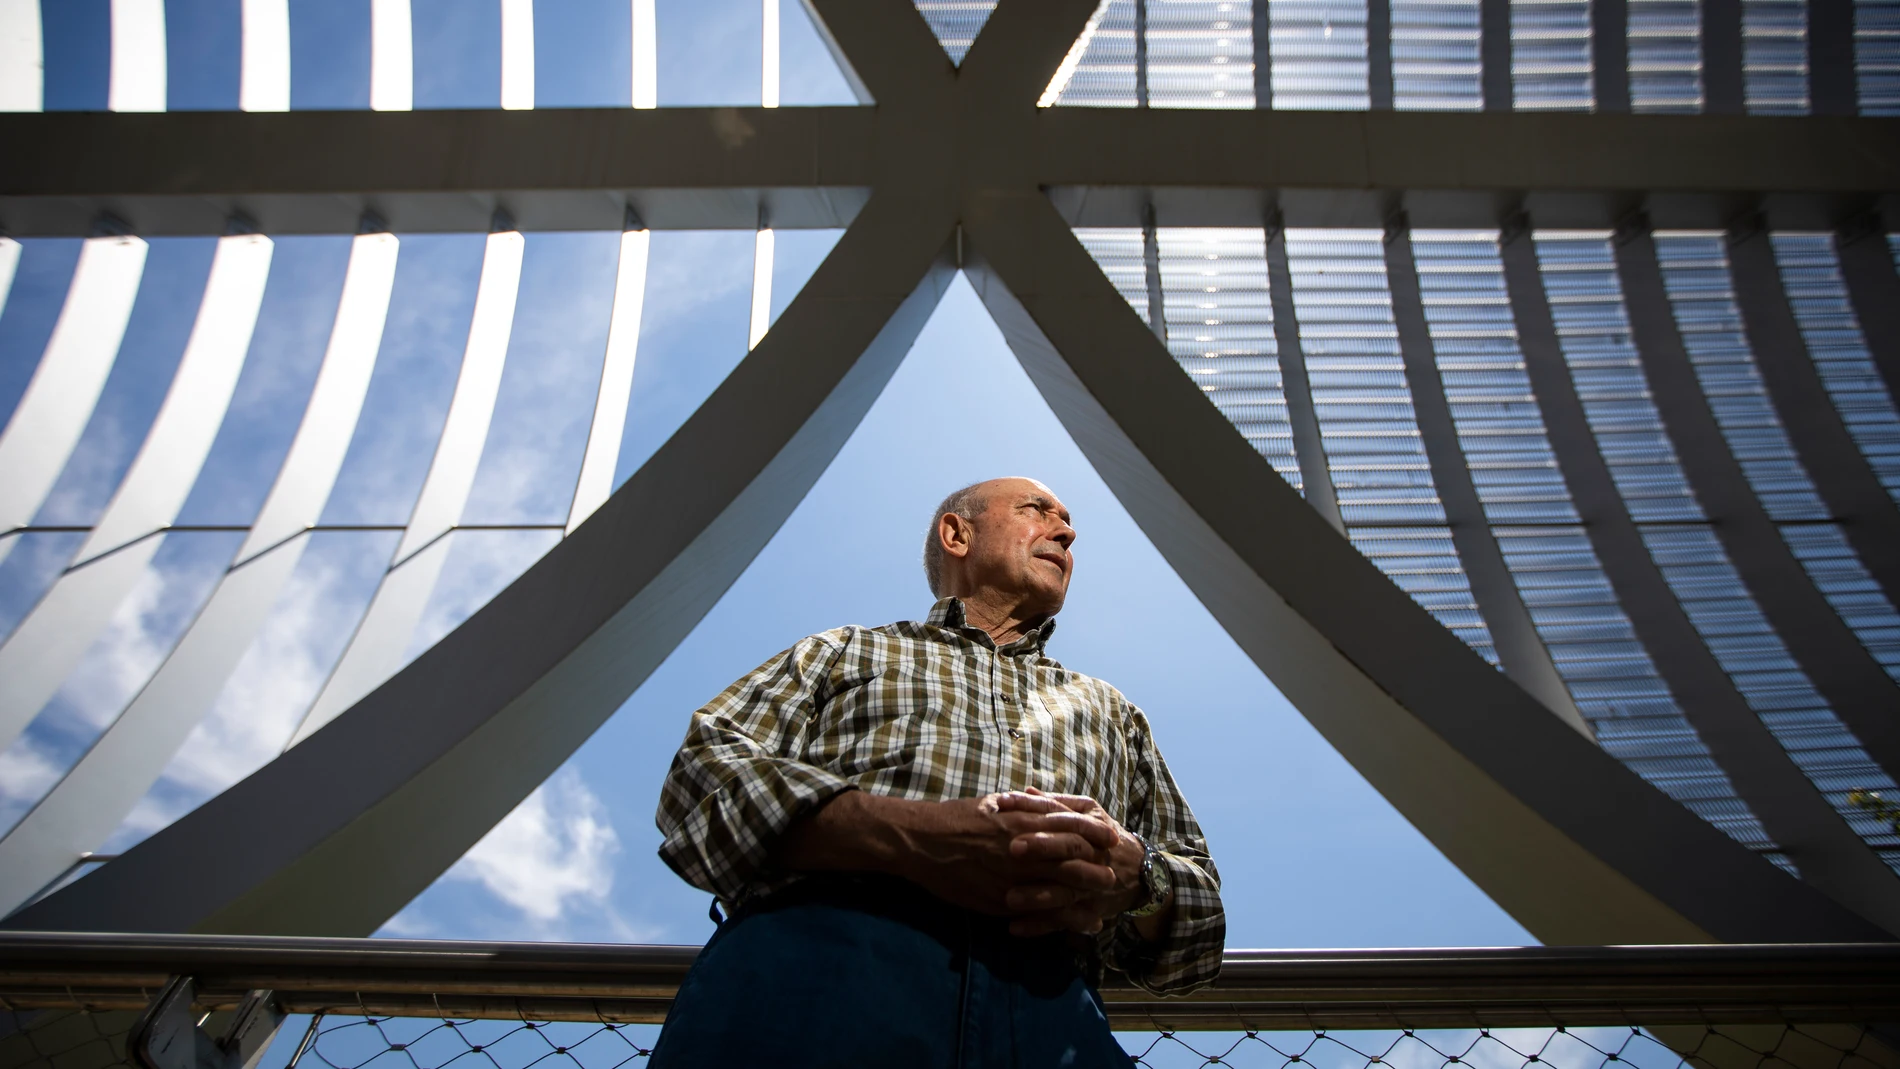 Santiago Gómez, de 69 años, cumplió esta semana un año desde que le diagnosticaron un tumor en la próstata